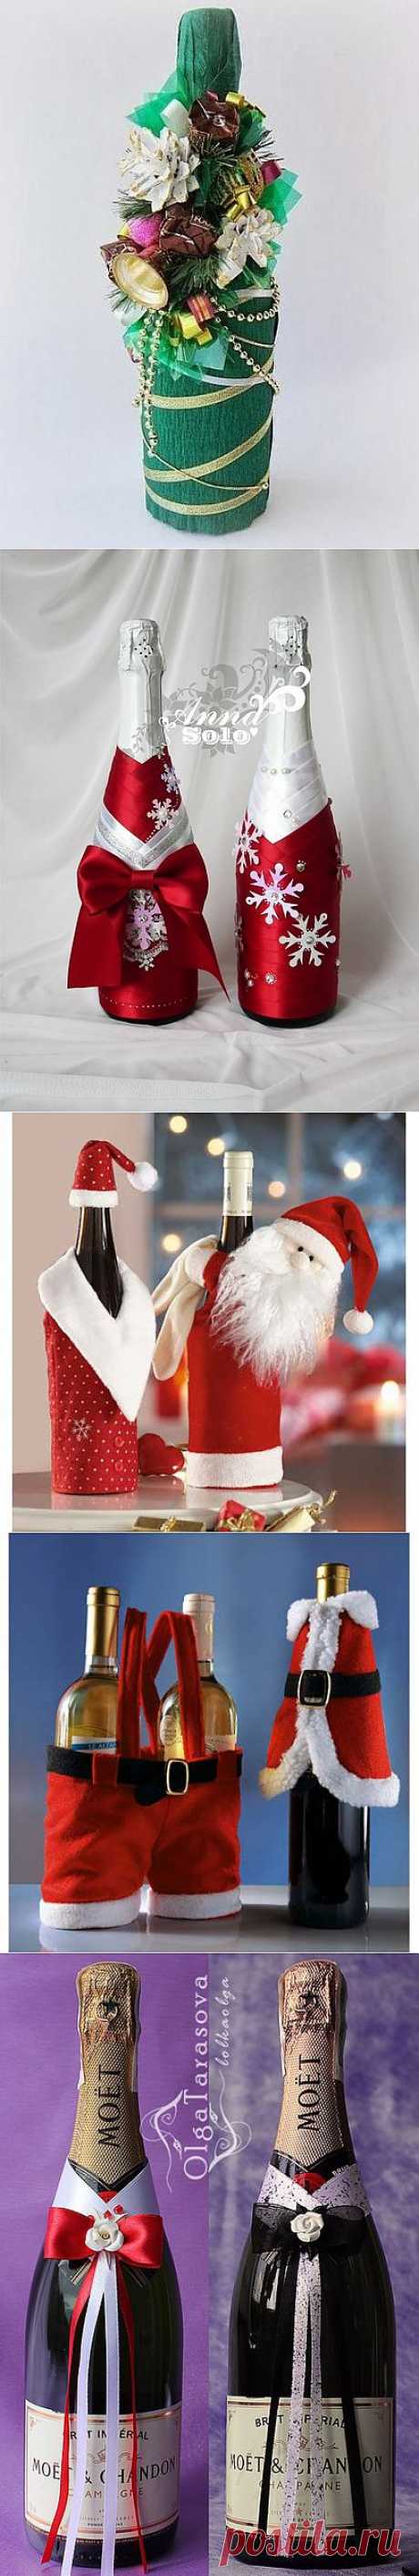 Бутылочка шампанского на Новый год в подарок — а почему бы и нет?

 

 

Но если подарить просто бутылку шампанского, то это как то скучно.

А если ее украсить? О! Это будет классный подарок! И незабываемый.
Например, как эти. Красиво!  МК